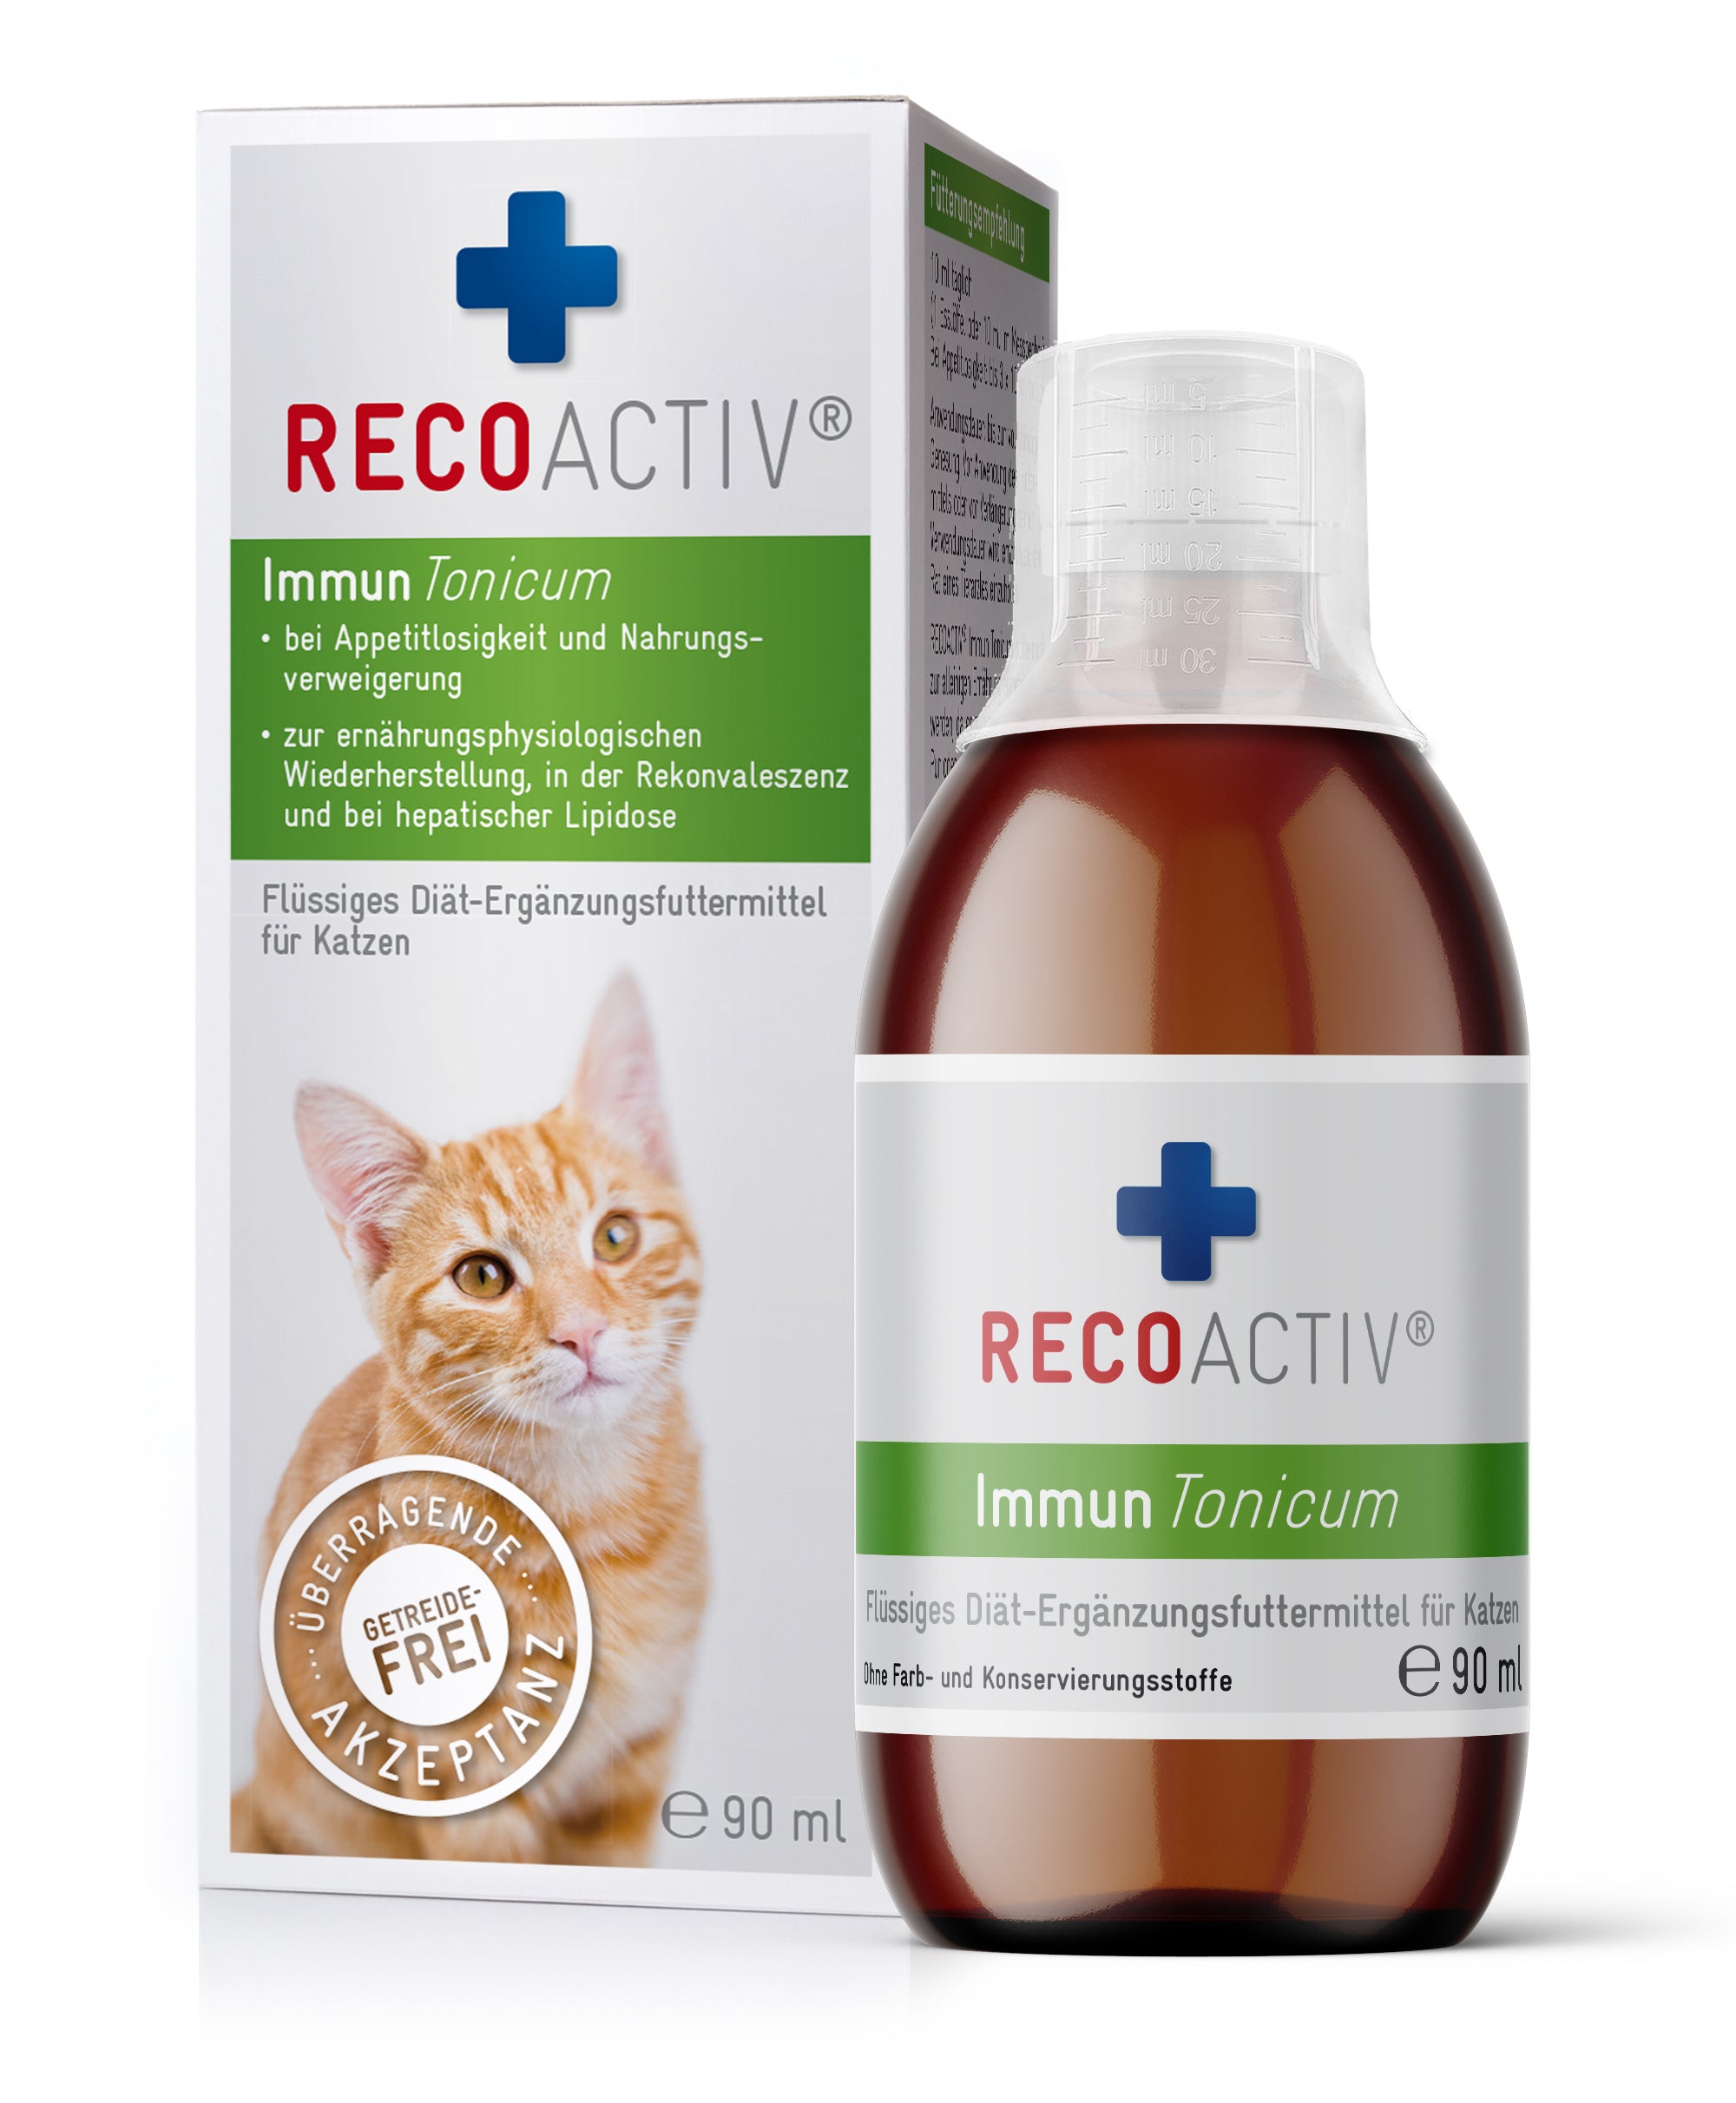 RECOACTIV® Immun Tonicum für immunschwache Katzen